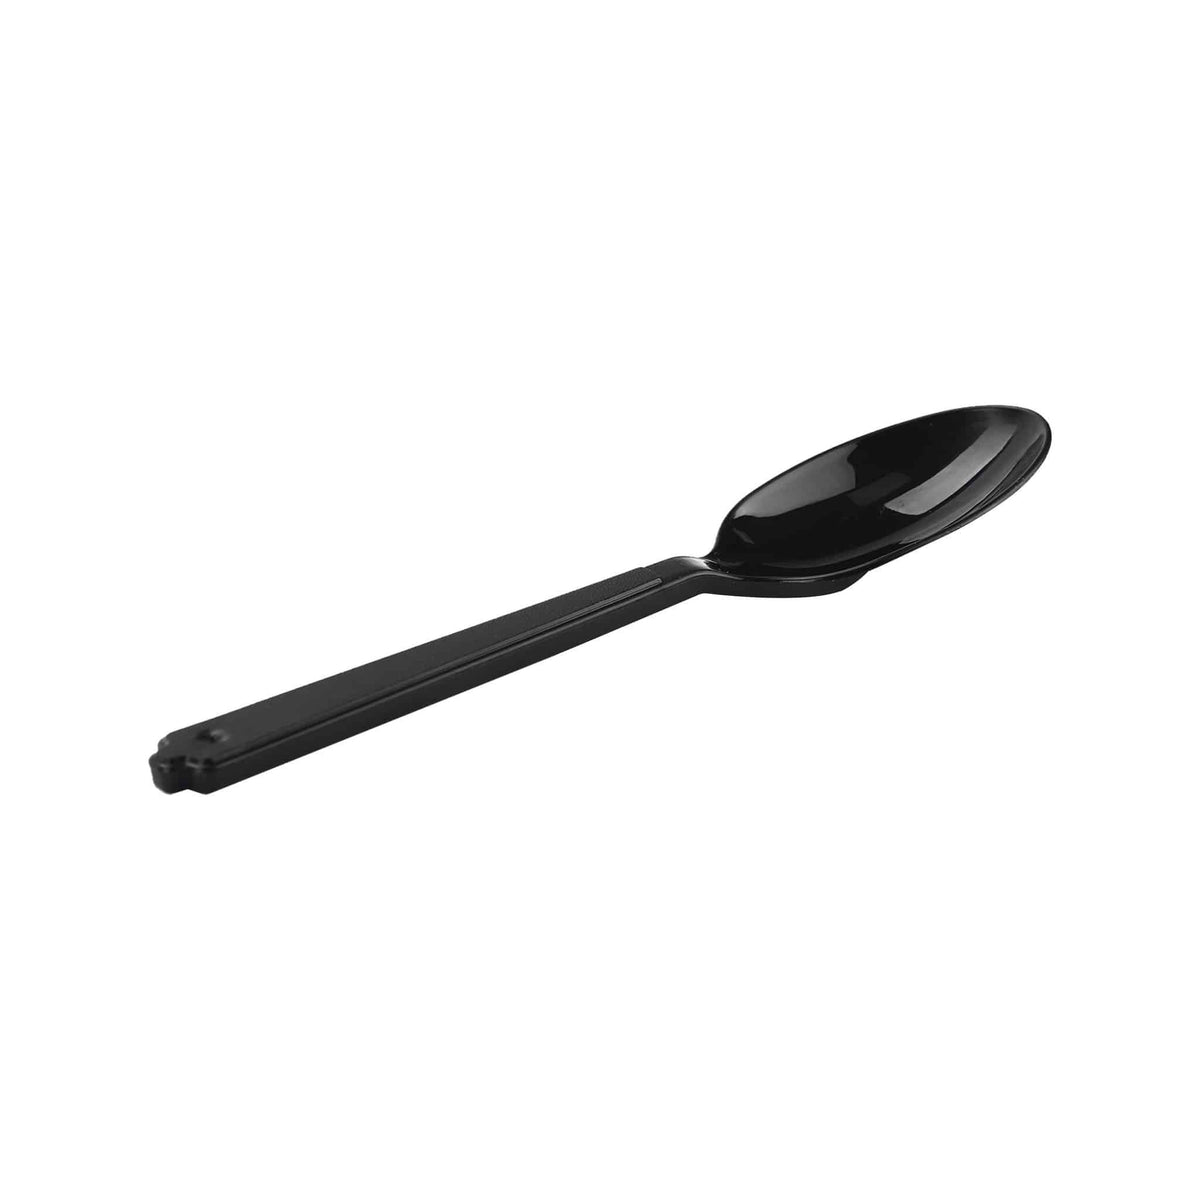 Plastic Medium Duty Black PP Spoon- Hotpack Global